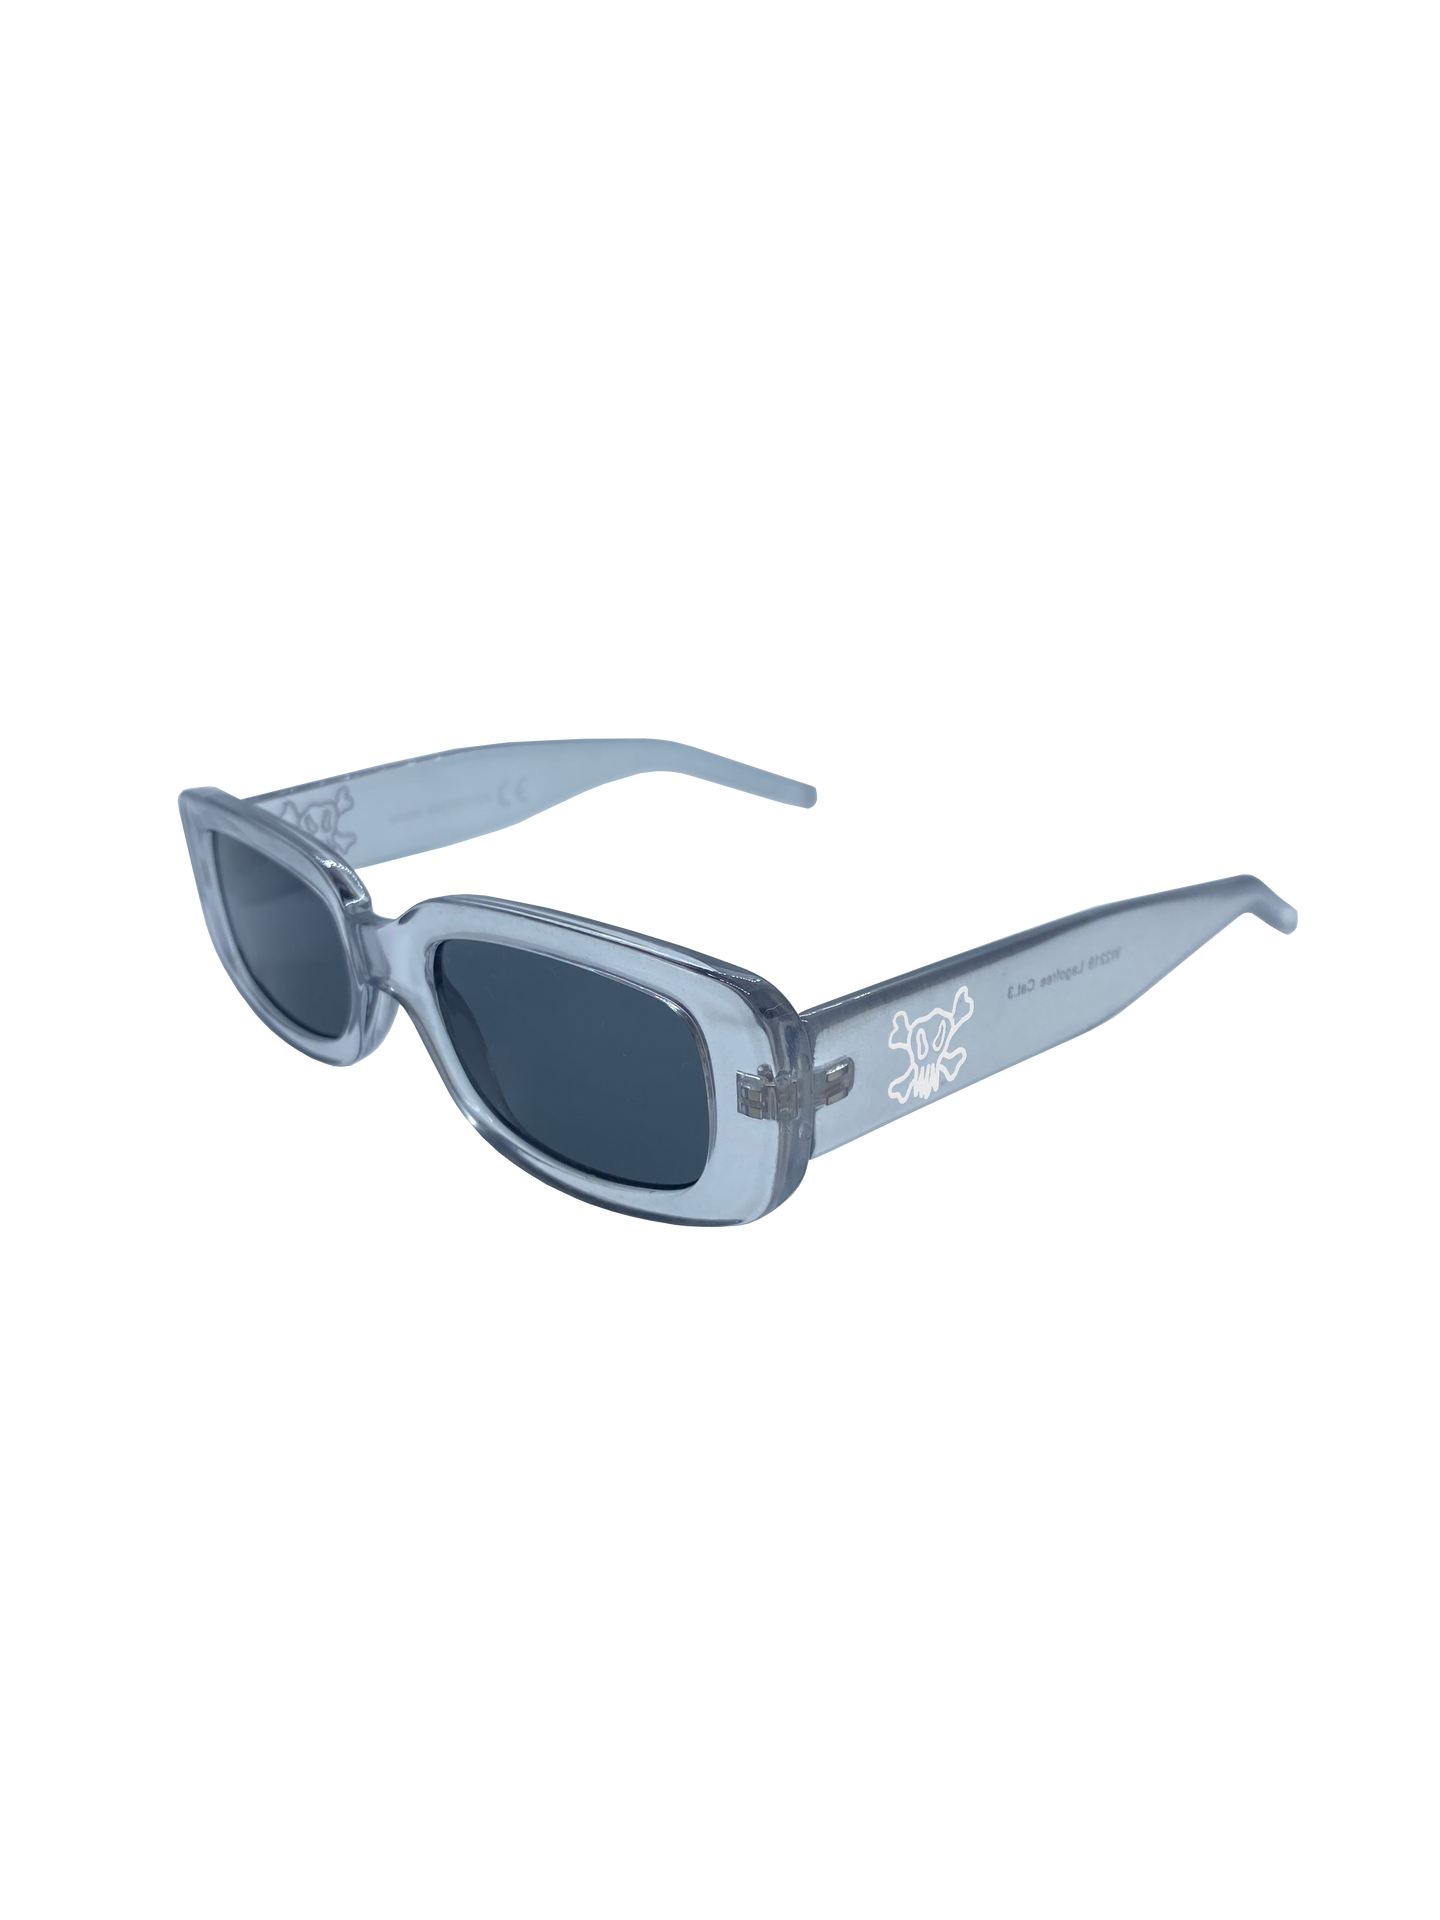 Trasparent Sunglasses